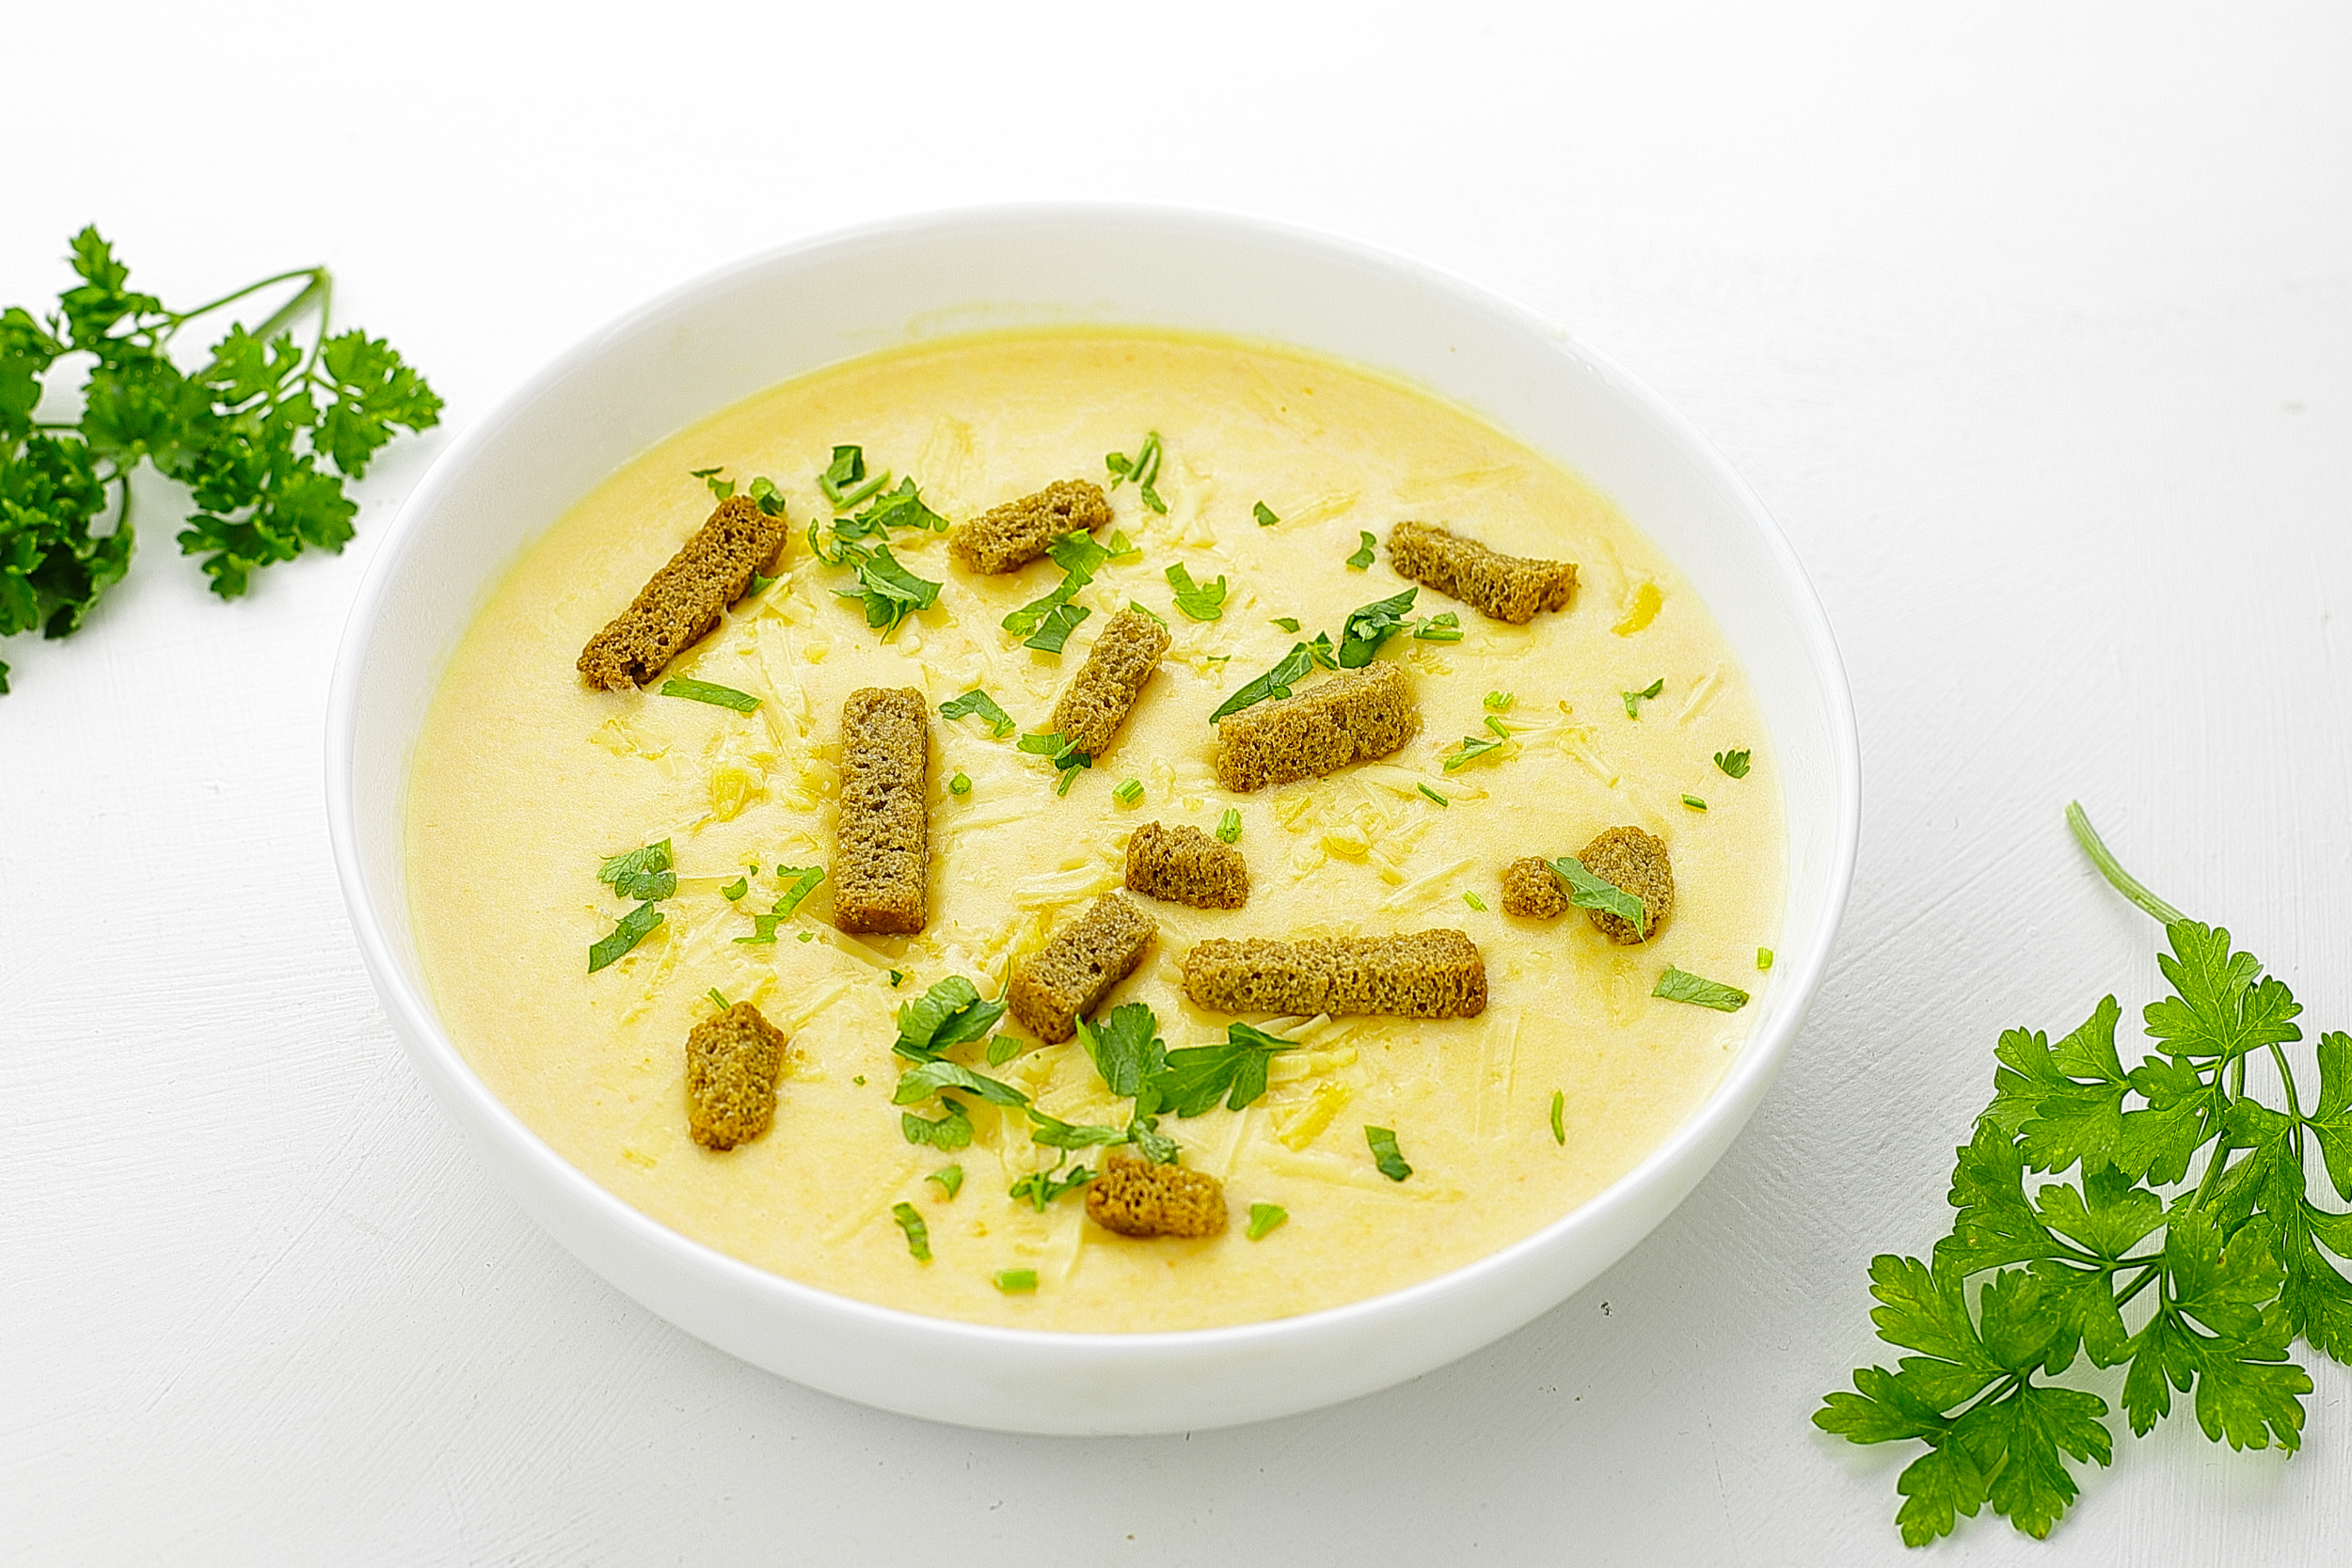 Сырный сливочный суп за 15 минут: рецепт с фото и видео пошагово | Меню недели